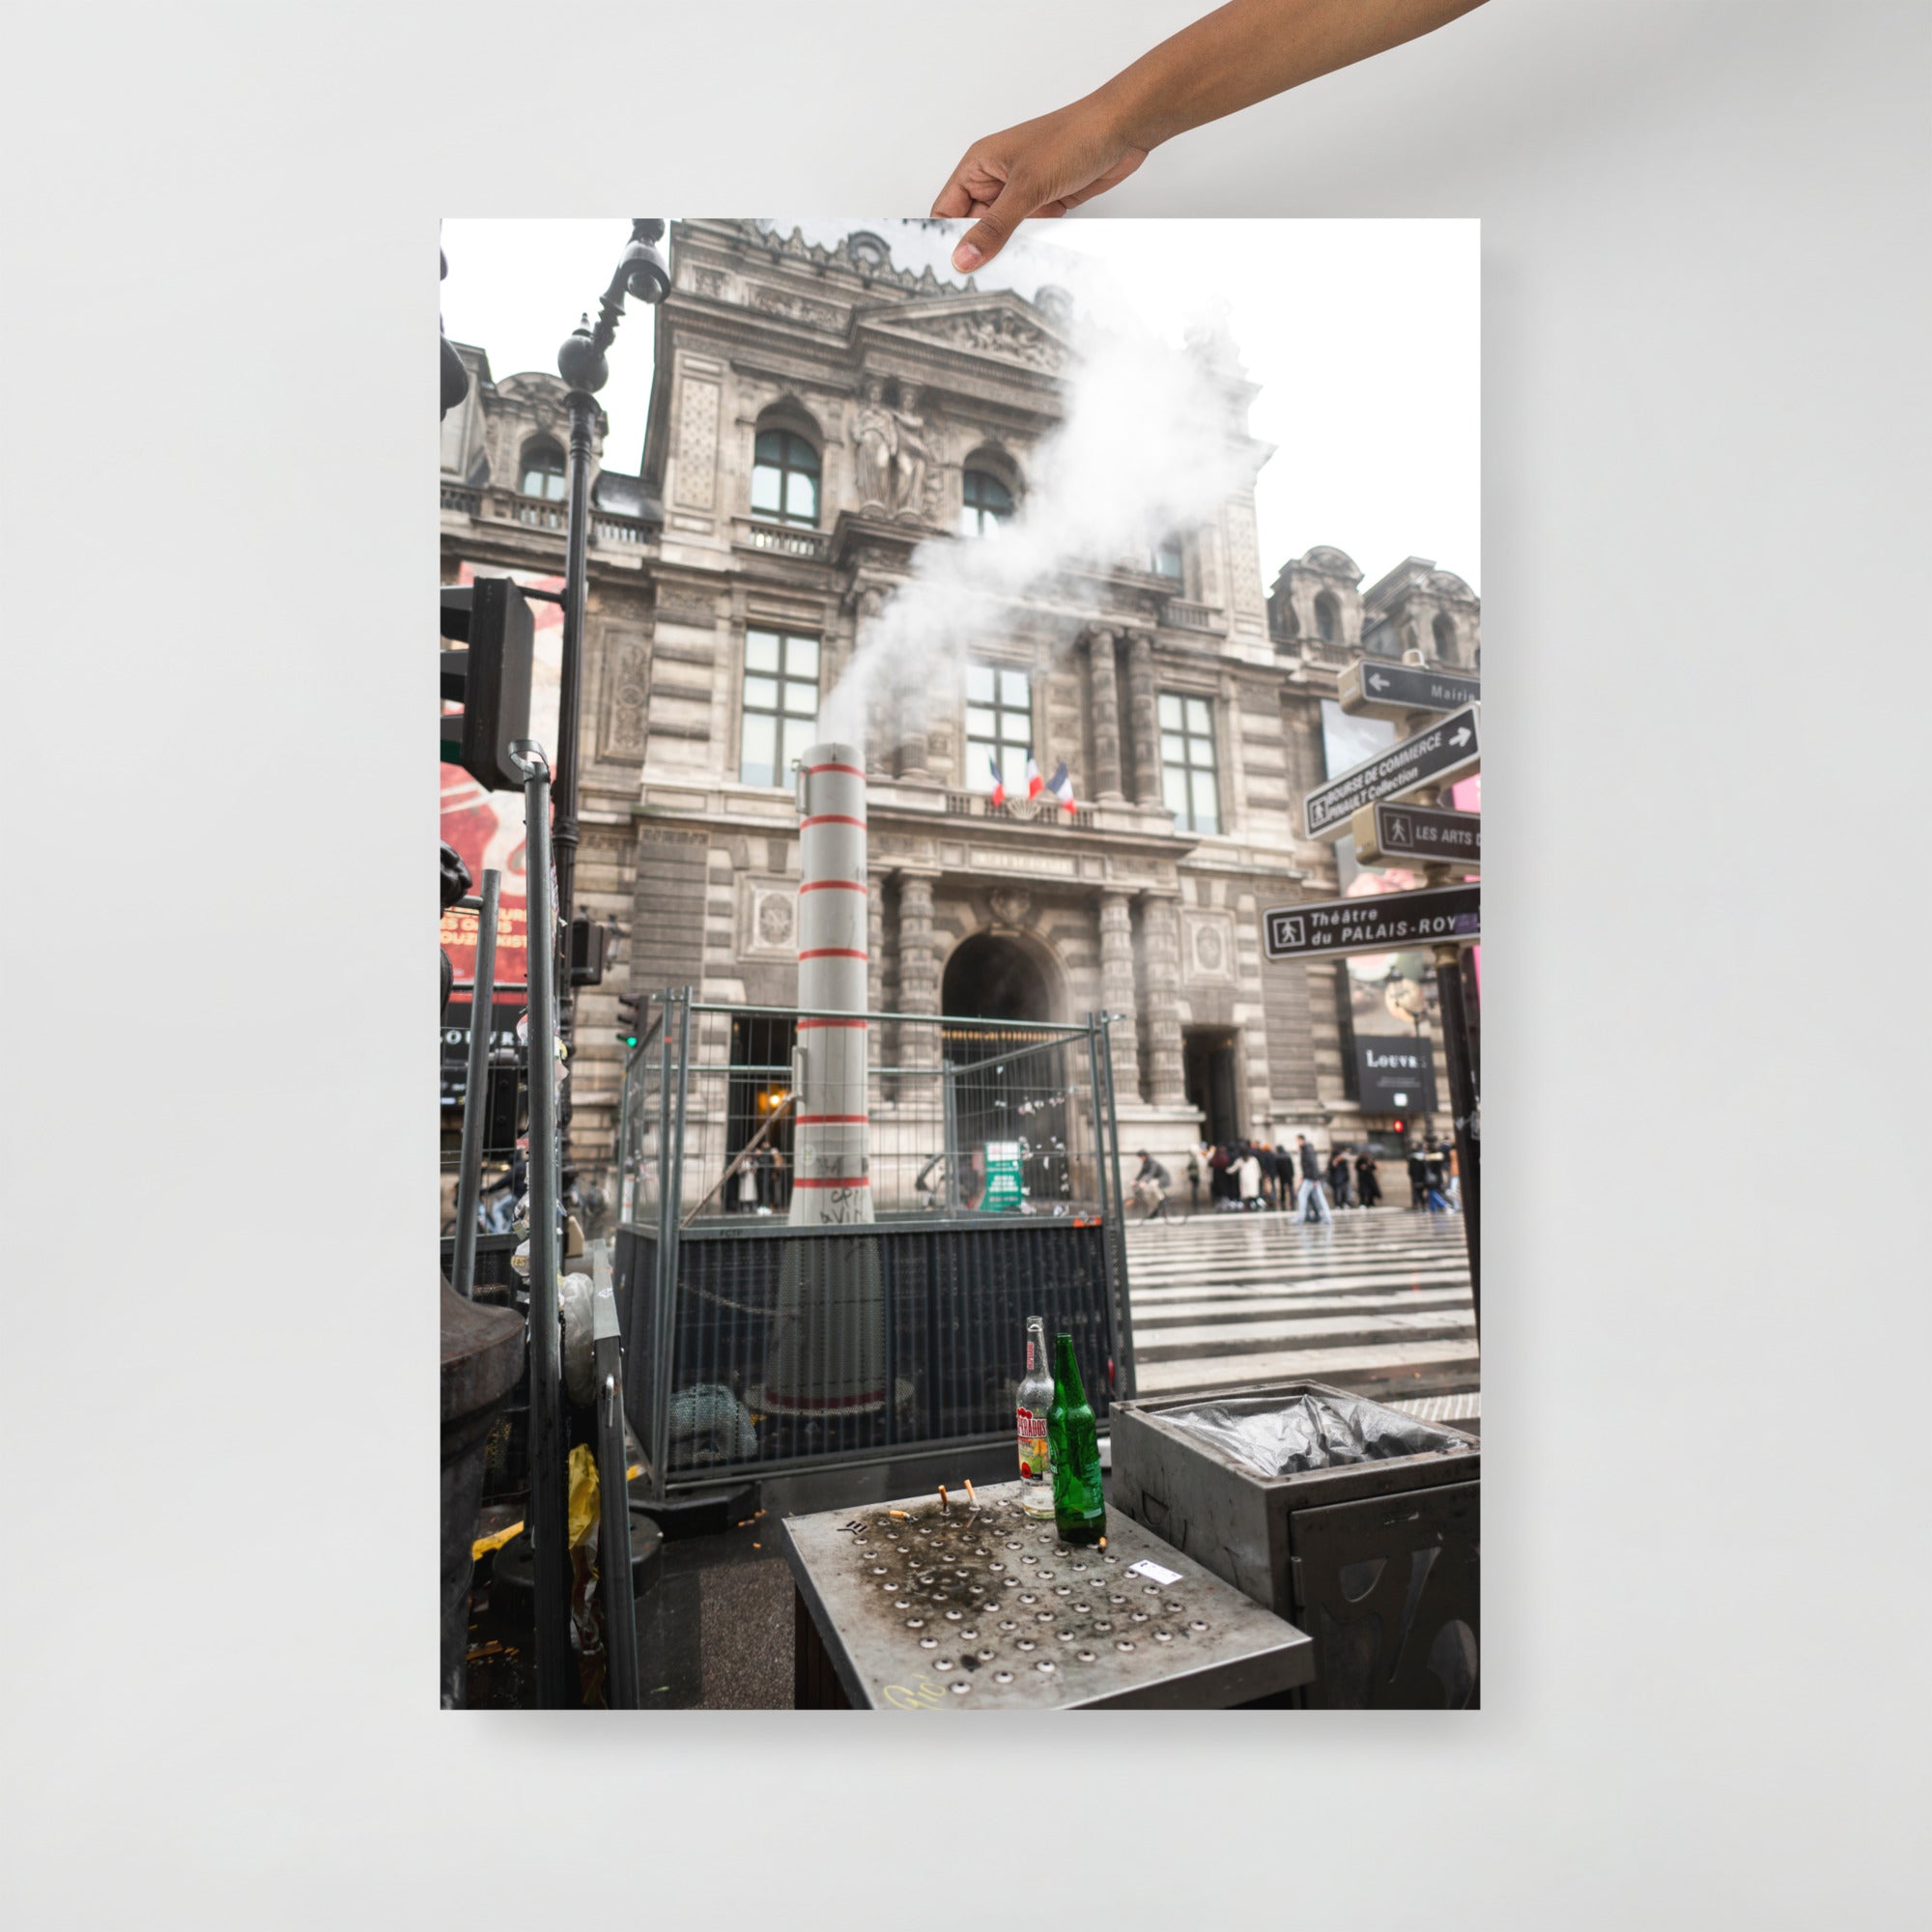 Poster mural - Passage Richelieu – Photographie de rue Paris – Poster photo, poster XXL, photographie murale et des posters muraux unique au monde. La boutique de posters créée par Yann Peccard un Photographe français.